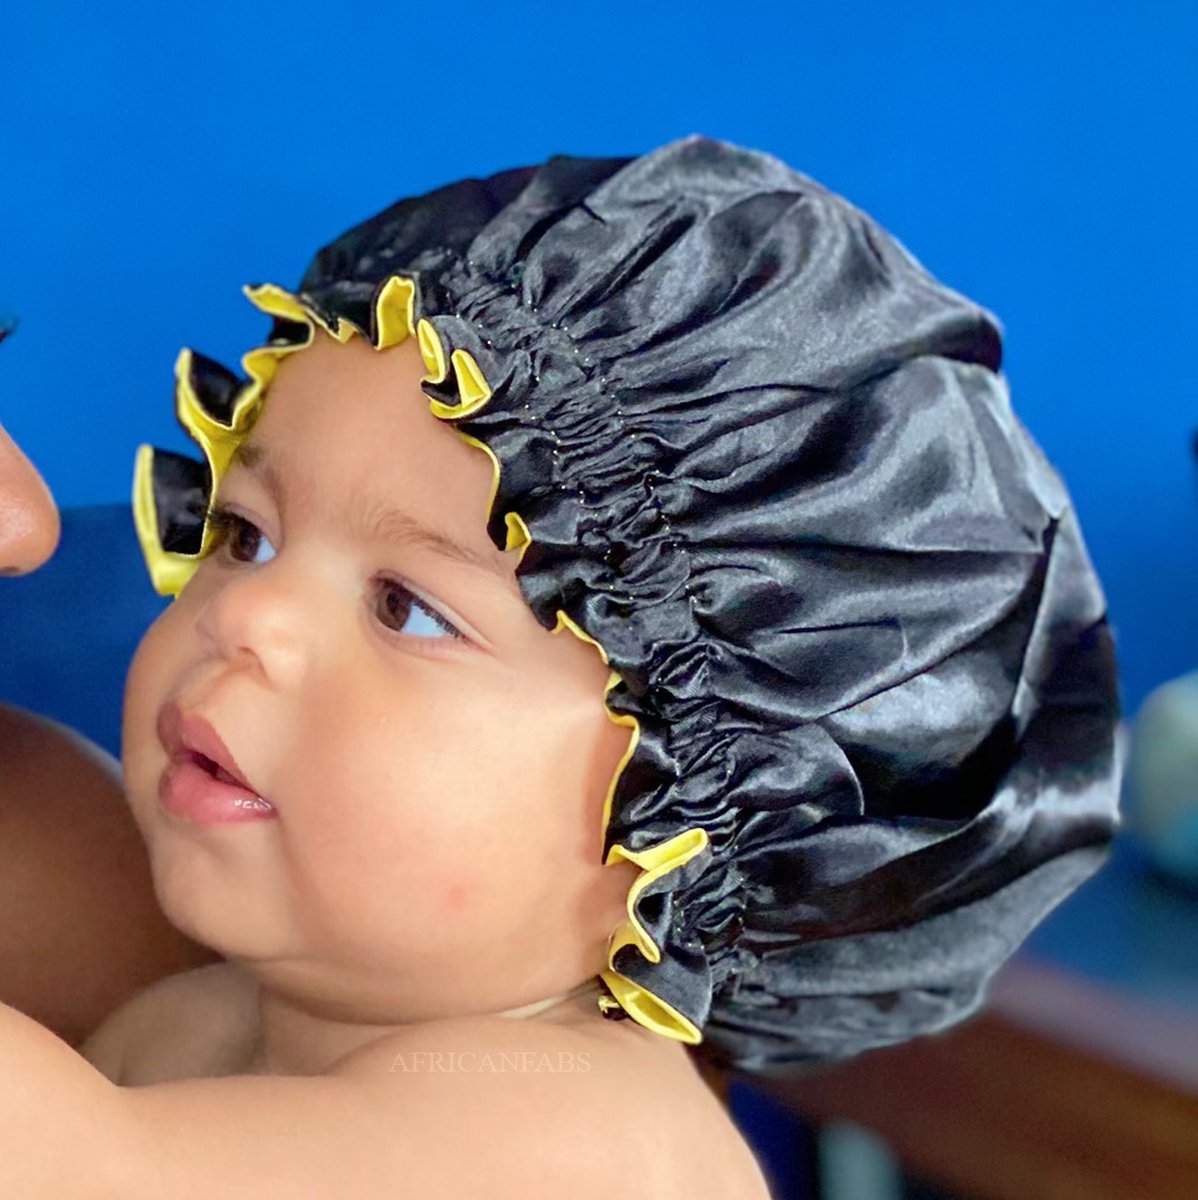 Zwarte / Gele Satijnen Slaapmuts voor Kinderen van 3-7 jaar AfricanFabs® / Kinder Hair Bonnet / Haar bonnet van Satijn / Satin bonnet